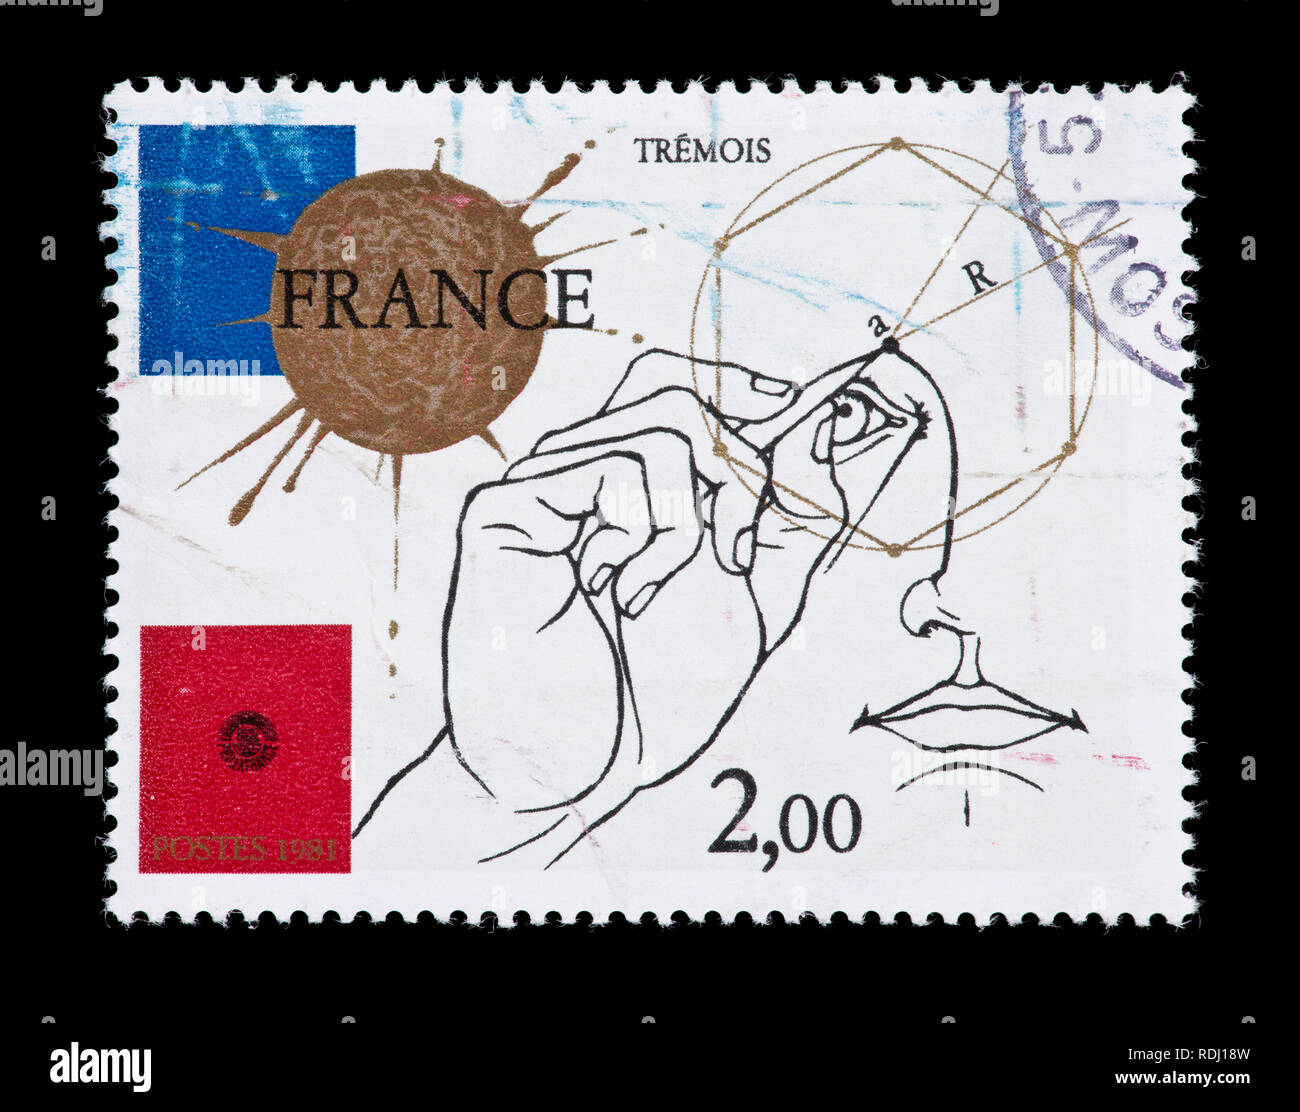 Briefmarke aus Frankreich zeigen einen Mann zeichnen geometrischer Figuren, für PhilexFrance Stempel Ausstellung ausgestellt. Stockfoto